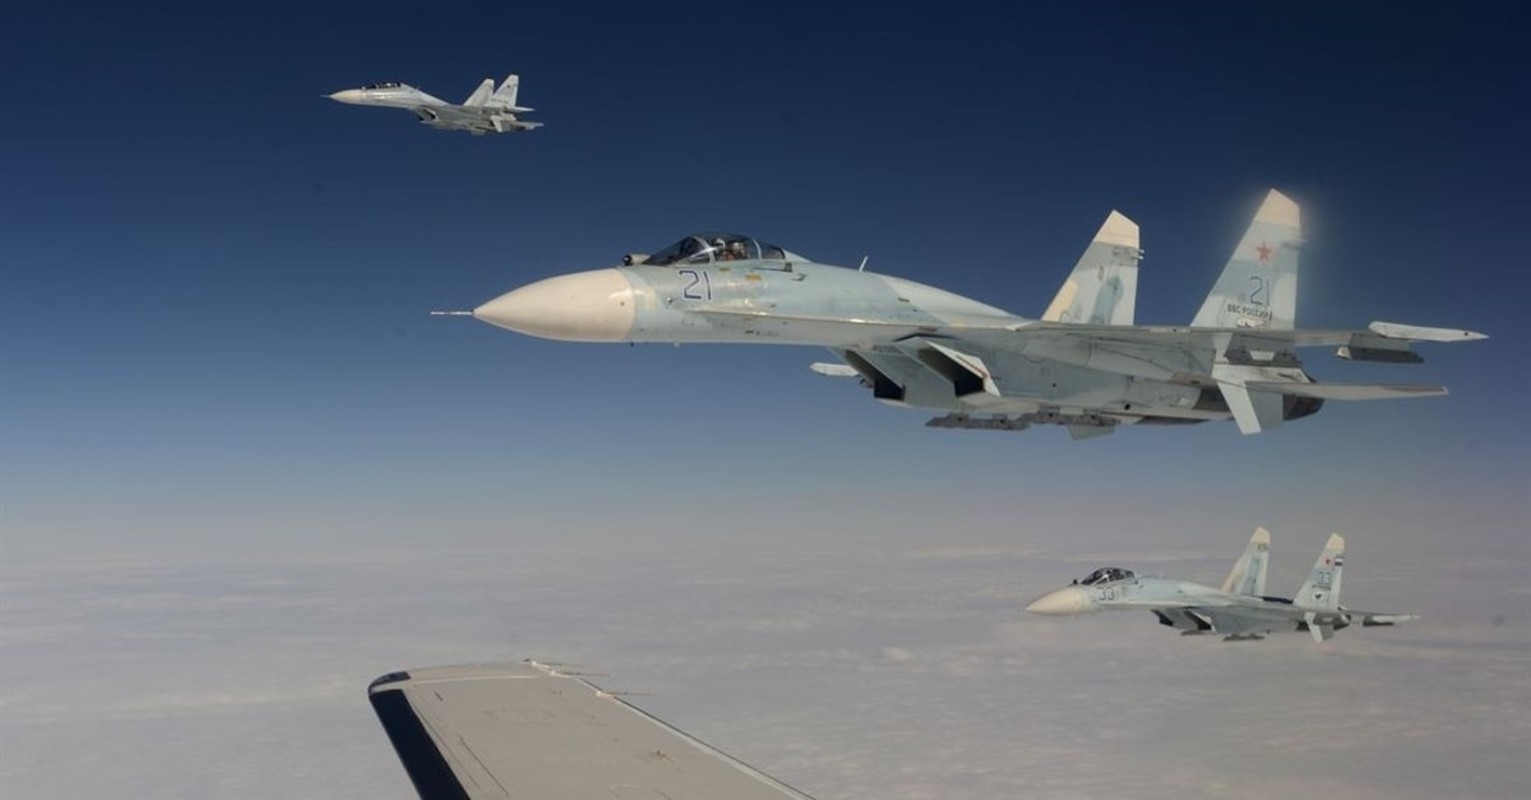 View - 	Chiến đấu cơ của Ukraine không thể cất cánh do sợ Su 35 Nga